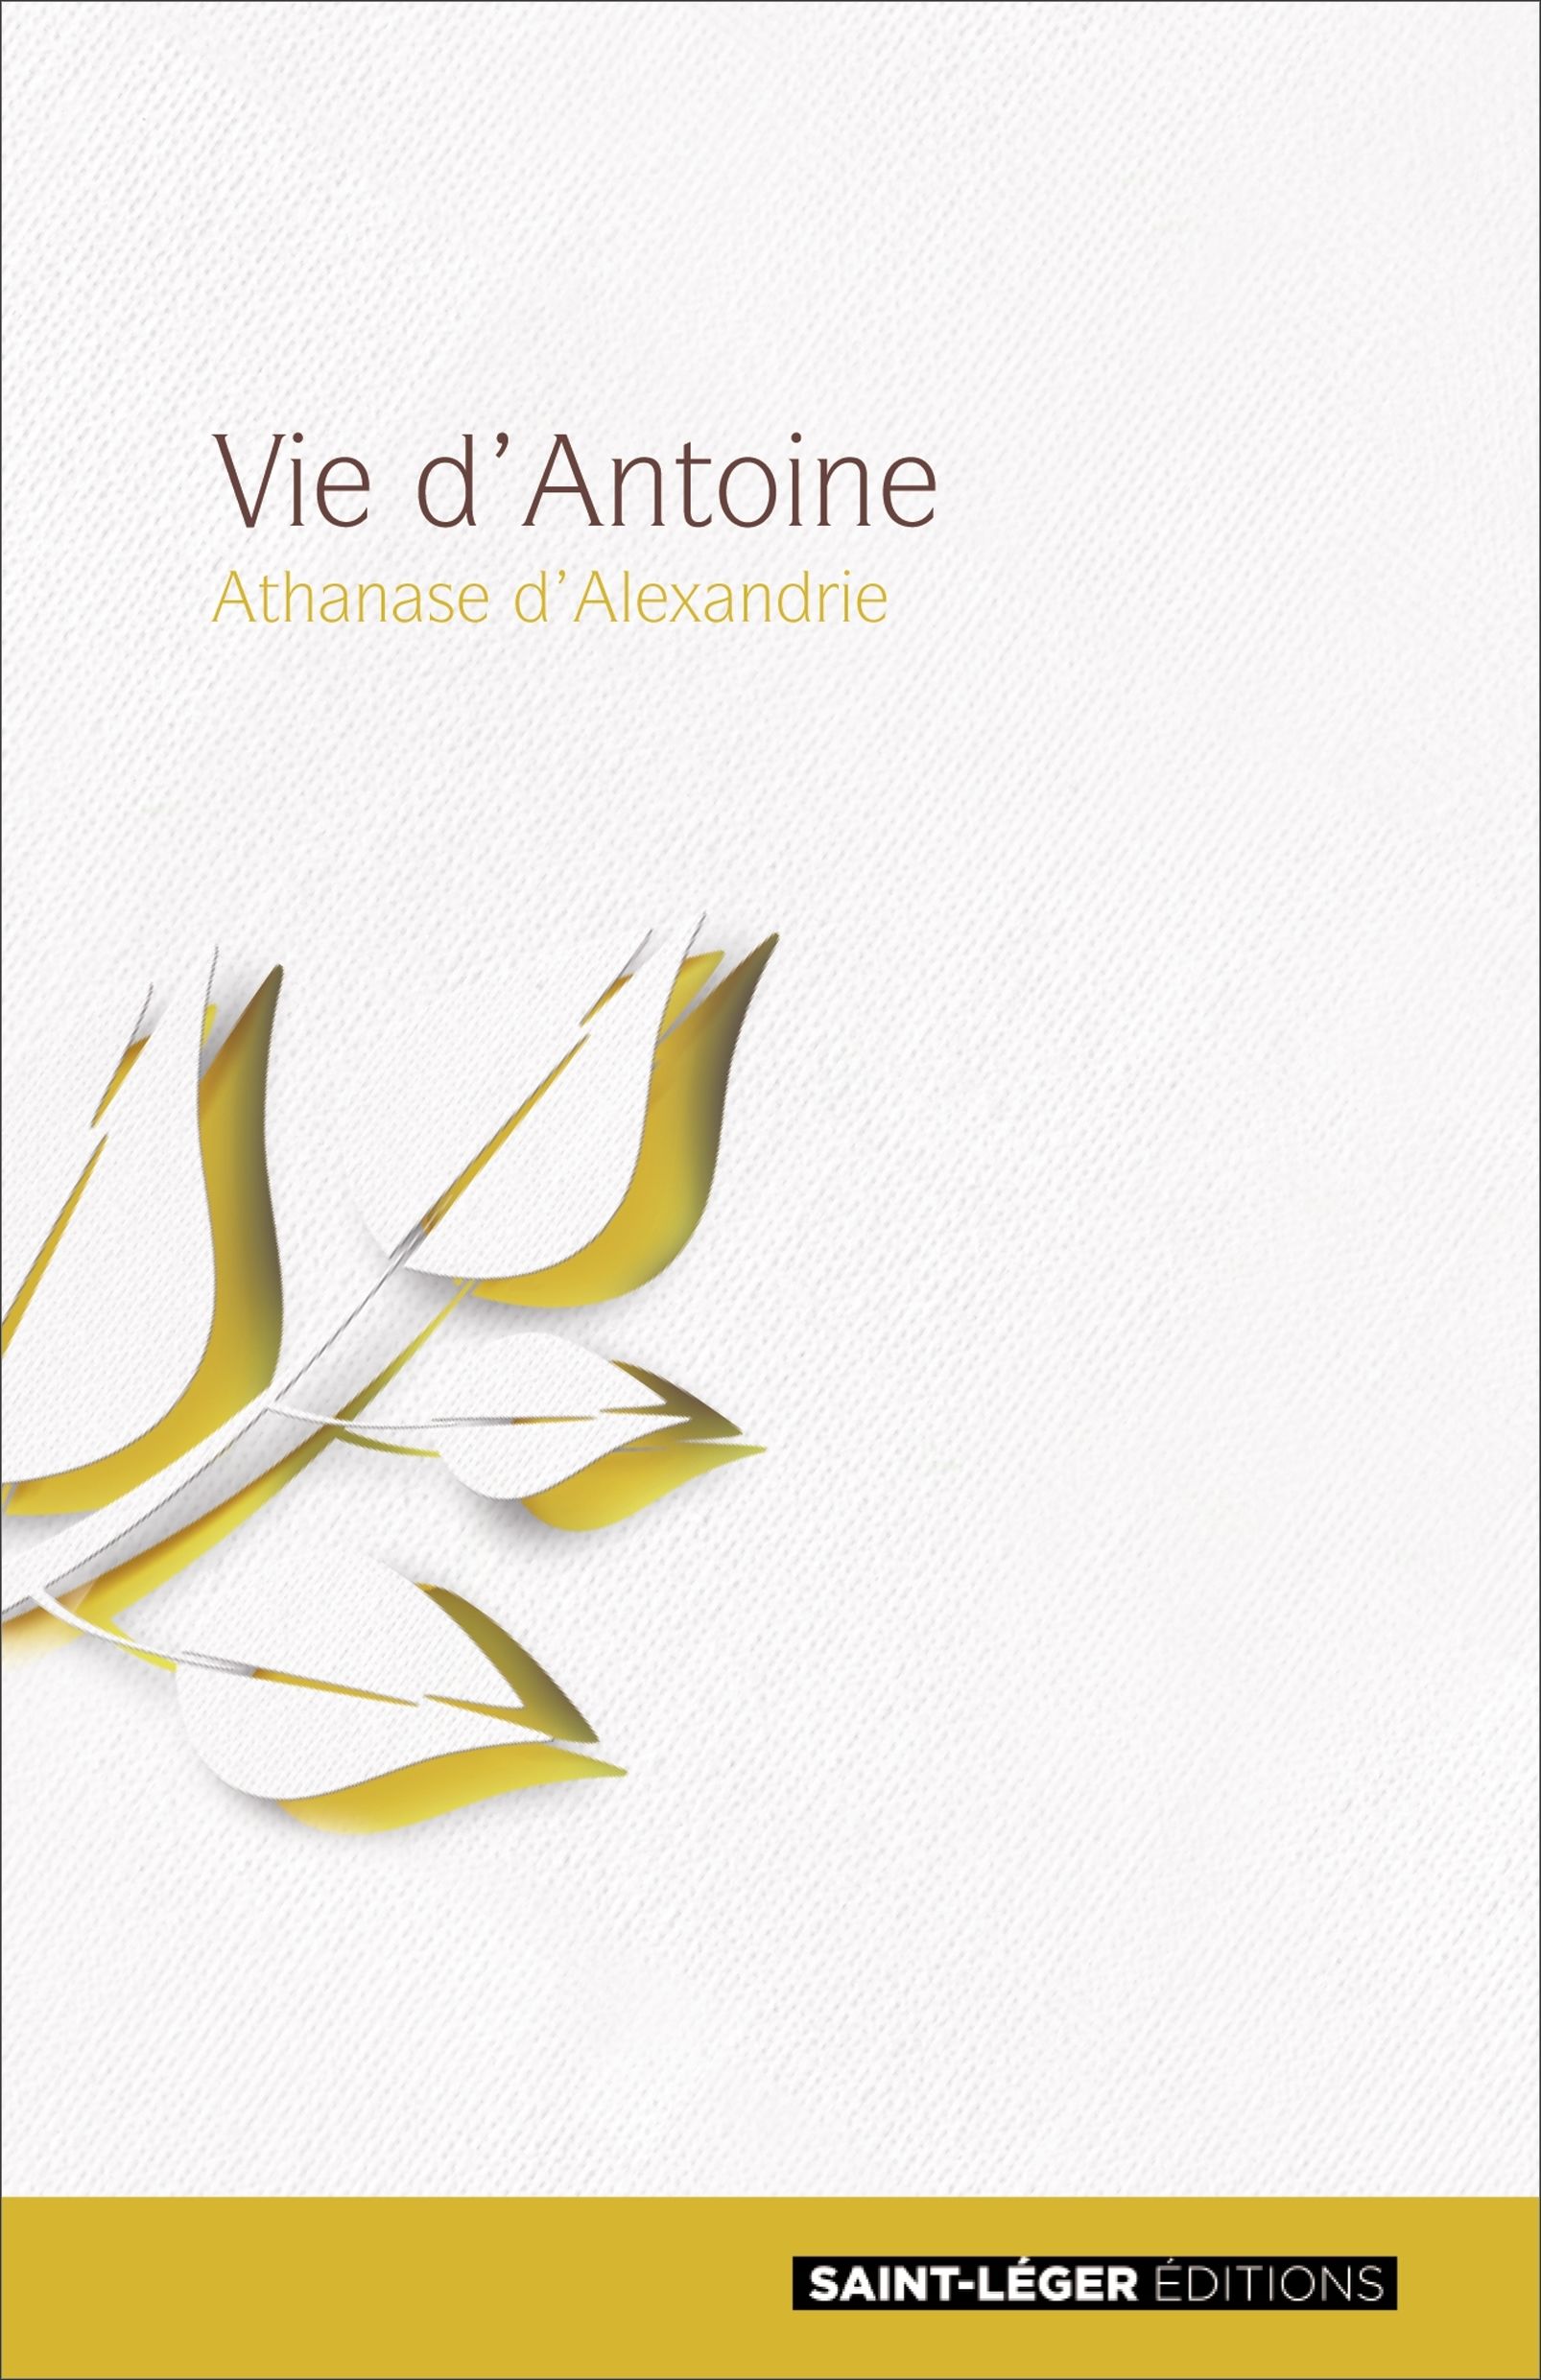 Christianisme, livre, Pres de l'Eglise, Athanase d'Alexandrie, Antoine